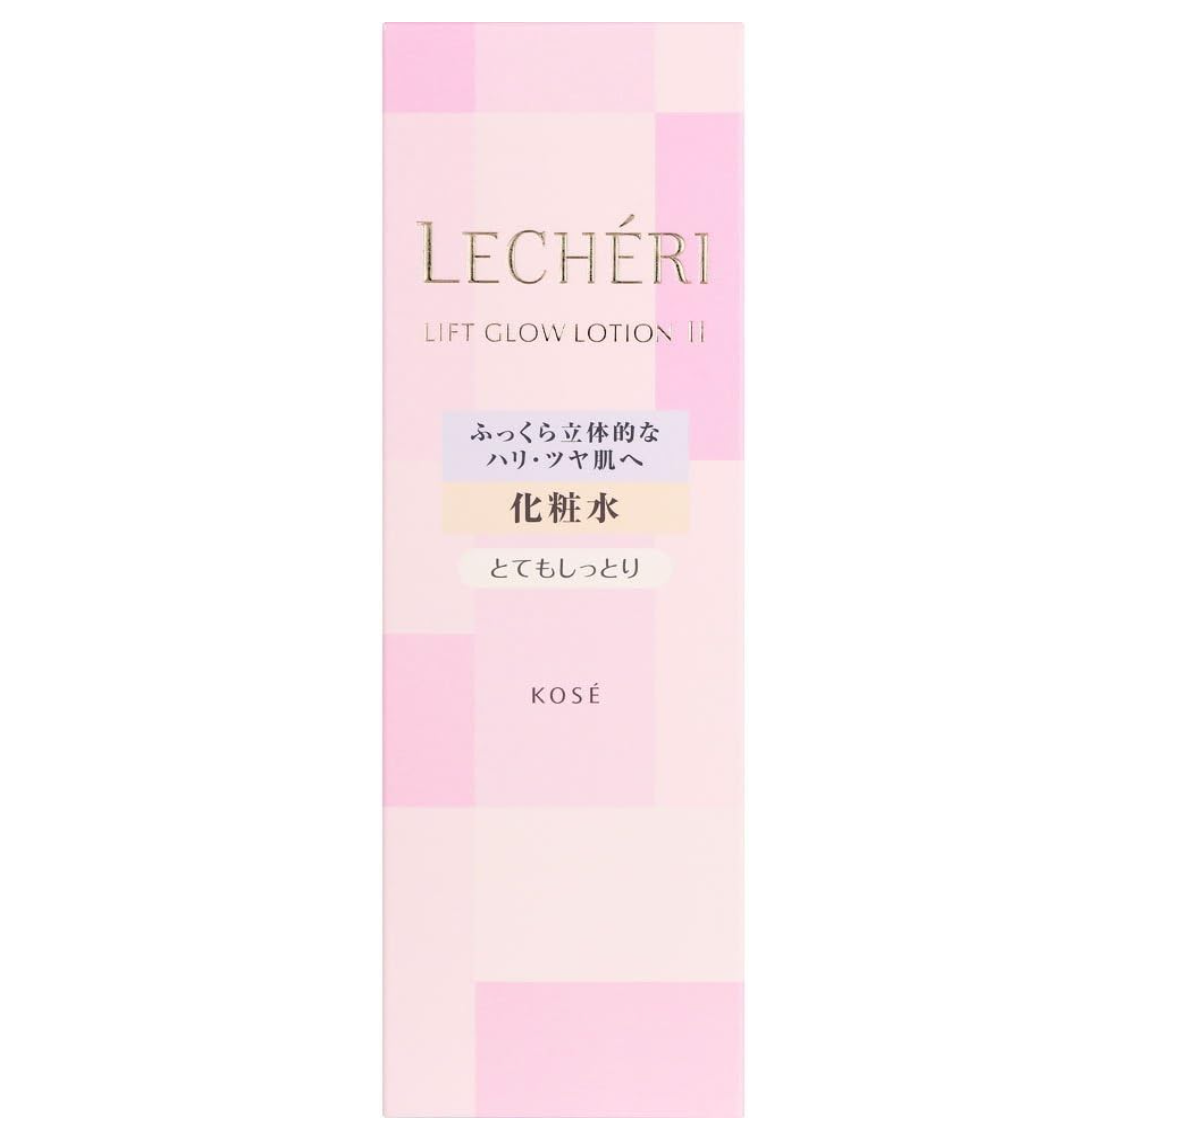 Kose Lecheri Lift Glow Lotion II Very Moist 160ml - Japanese Hydrating Lotion